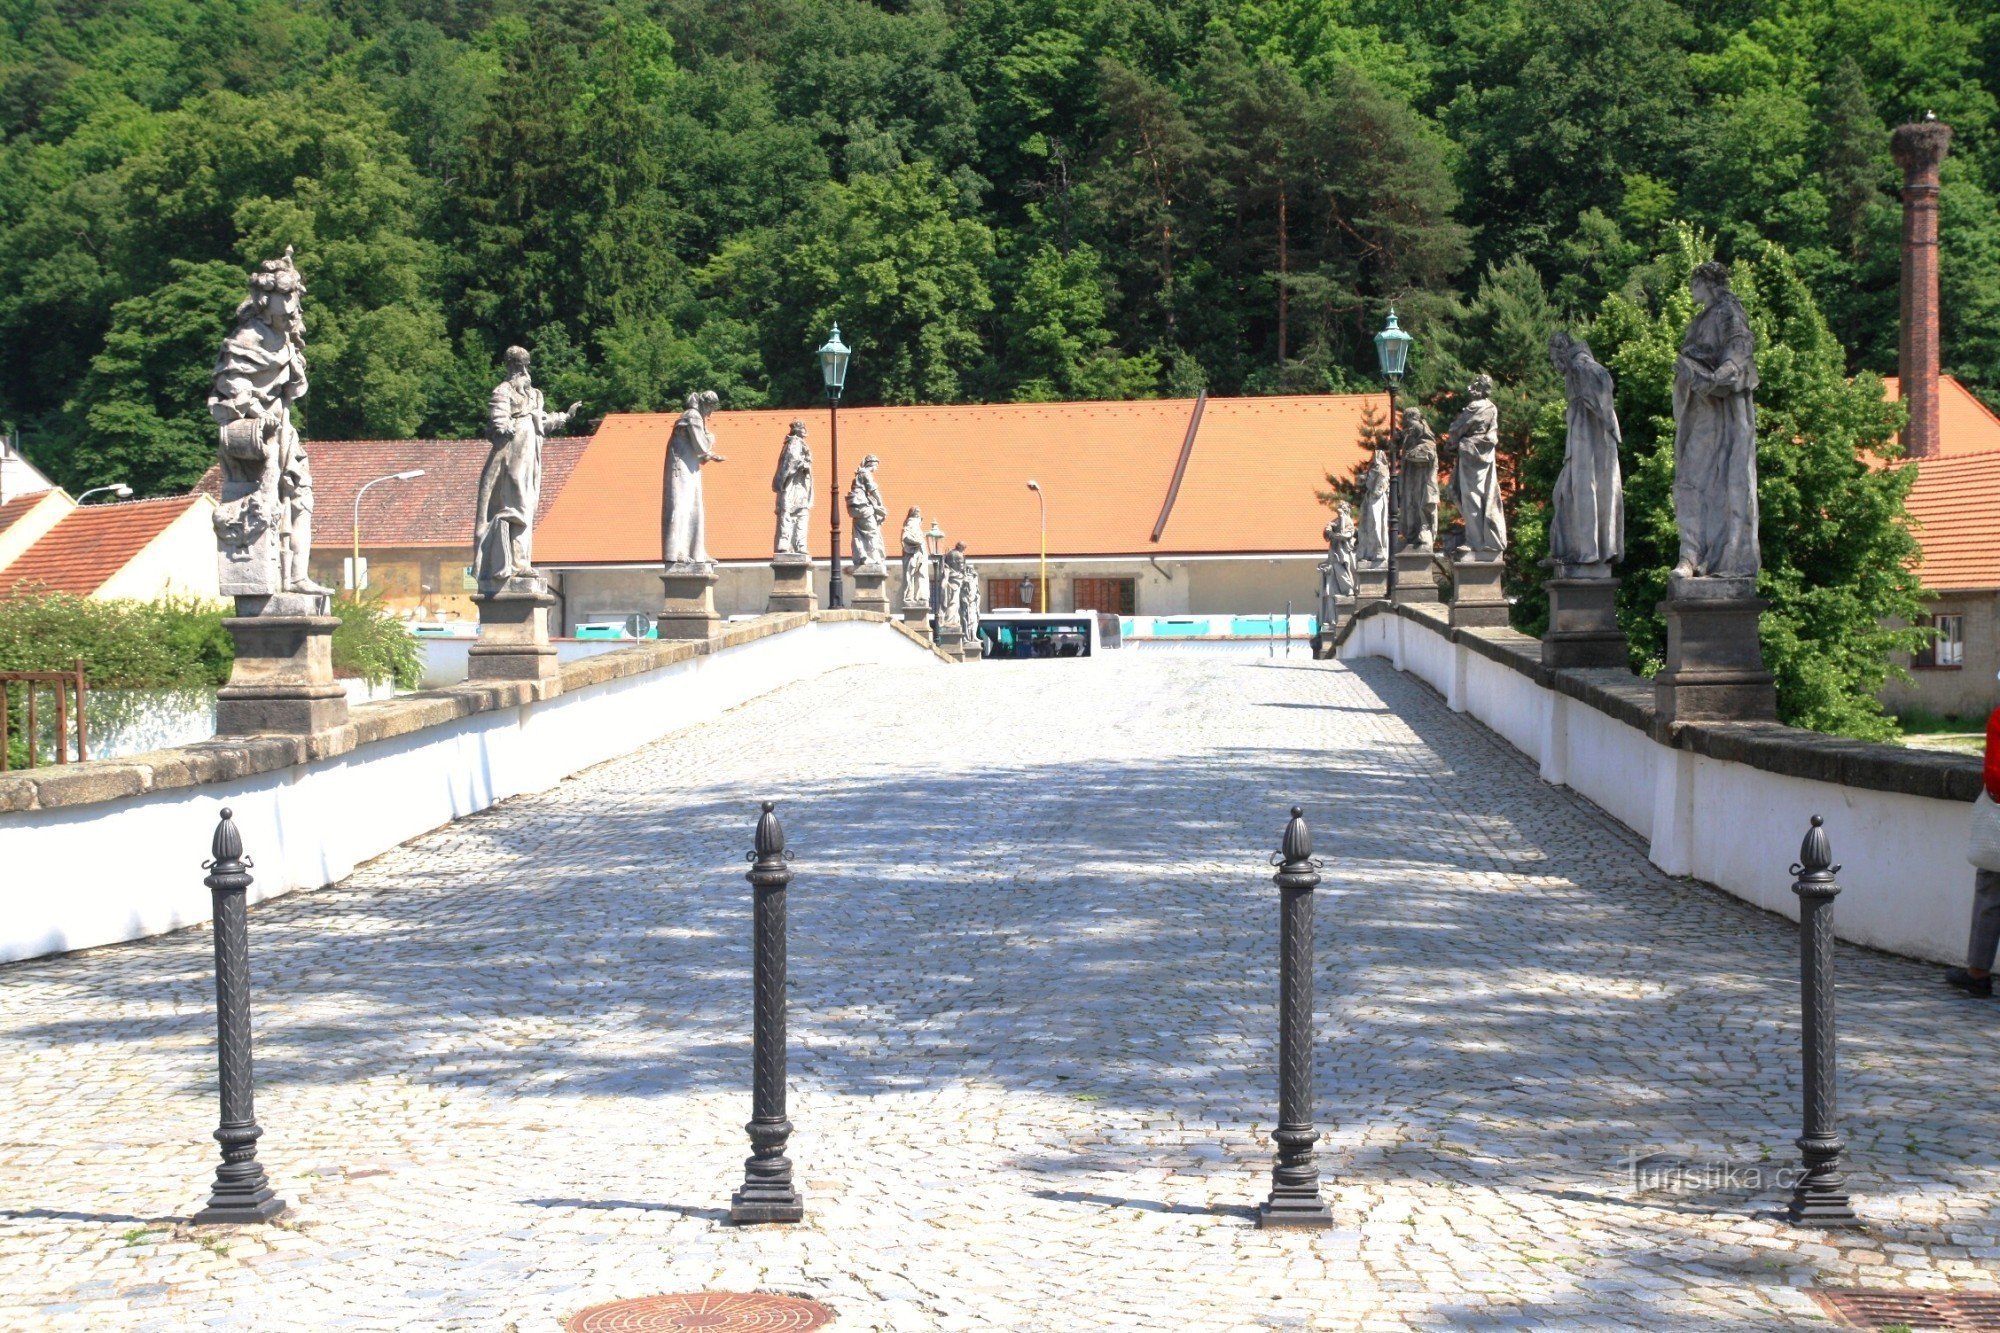 Náměšť nad Oslavou - barokni kameni most 2011